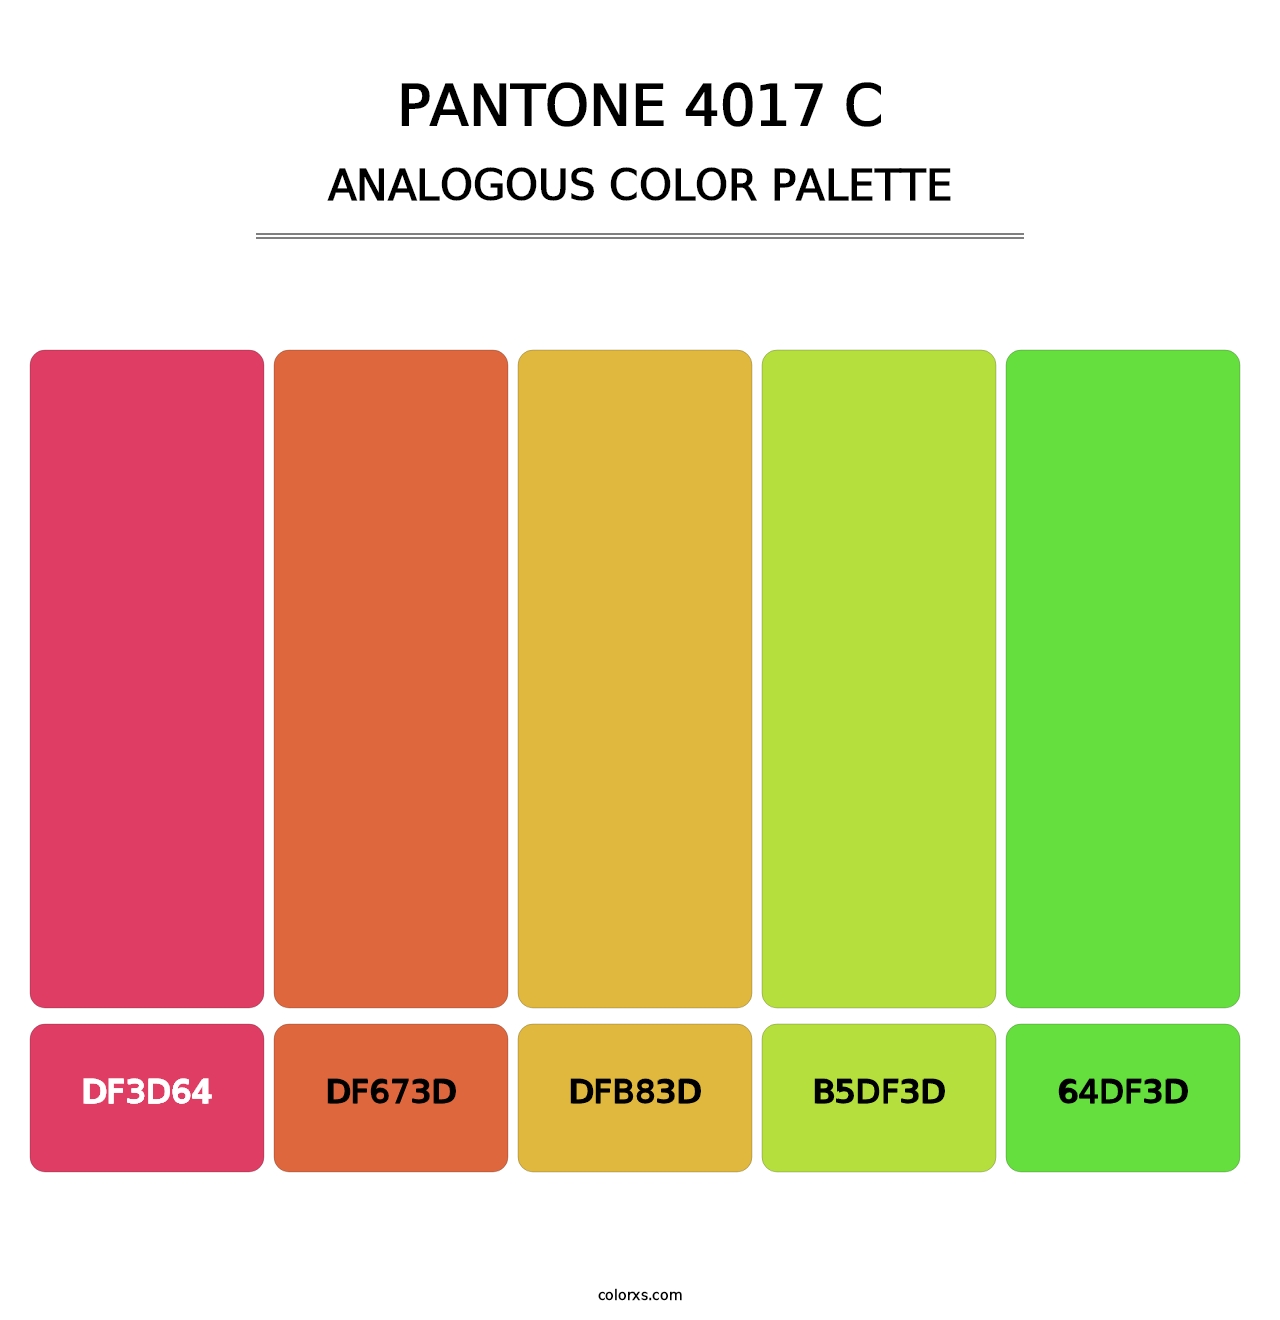 PANTONE 4017 C - Analogous Color Palette